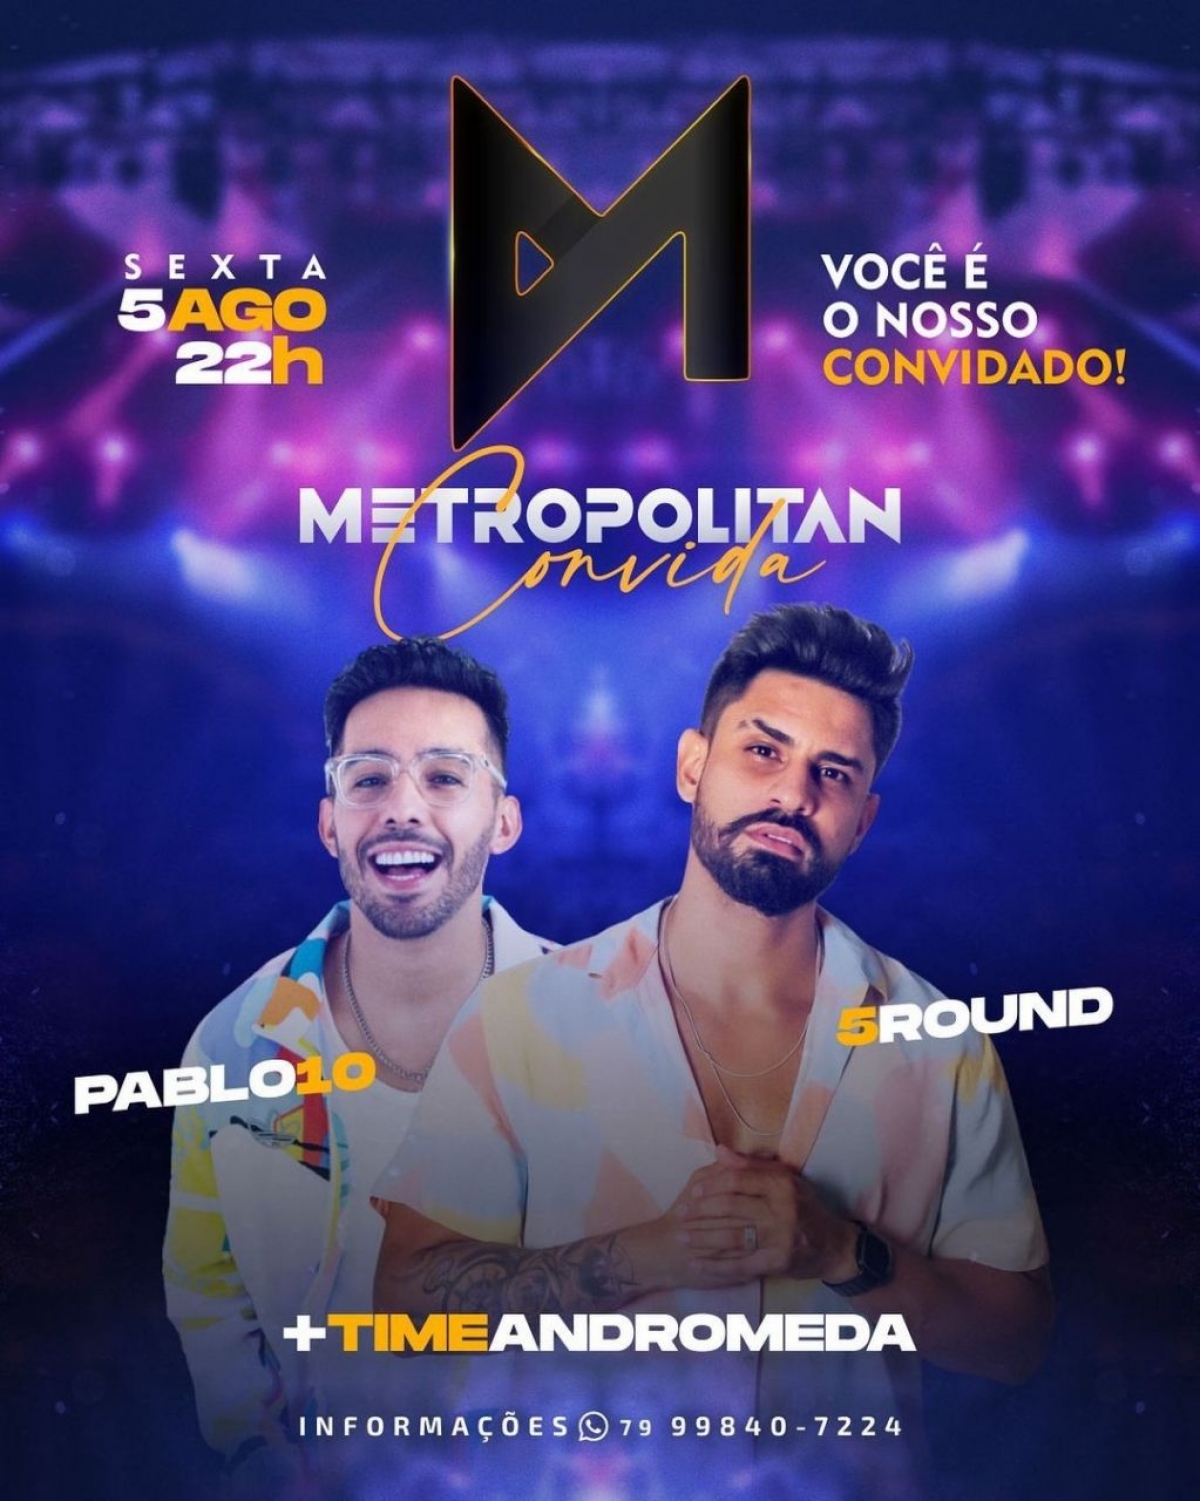 Pablo 10 e 5 Round serão as atrações desta sexta-feira no Metropolitan Bar - Imagem: Divulgação